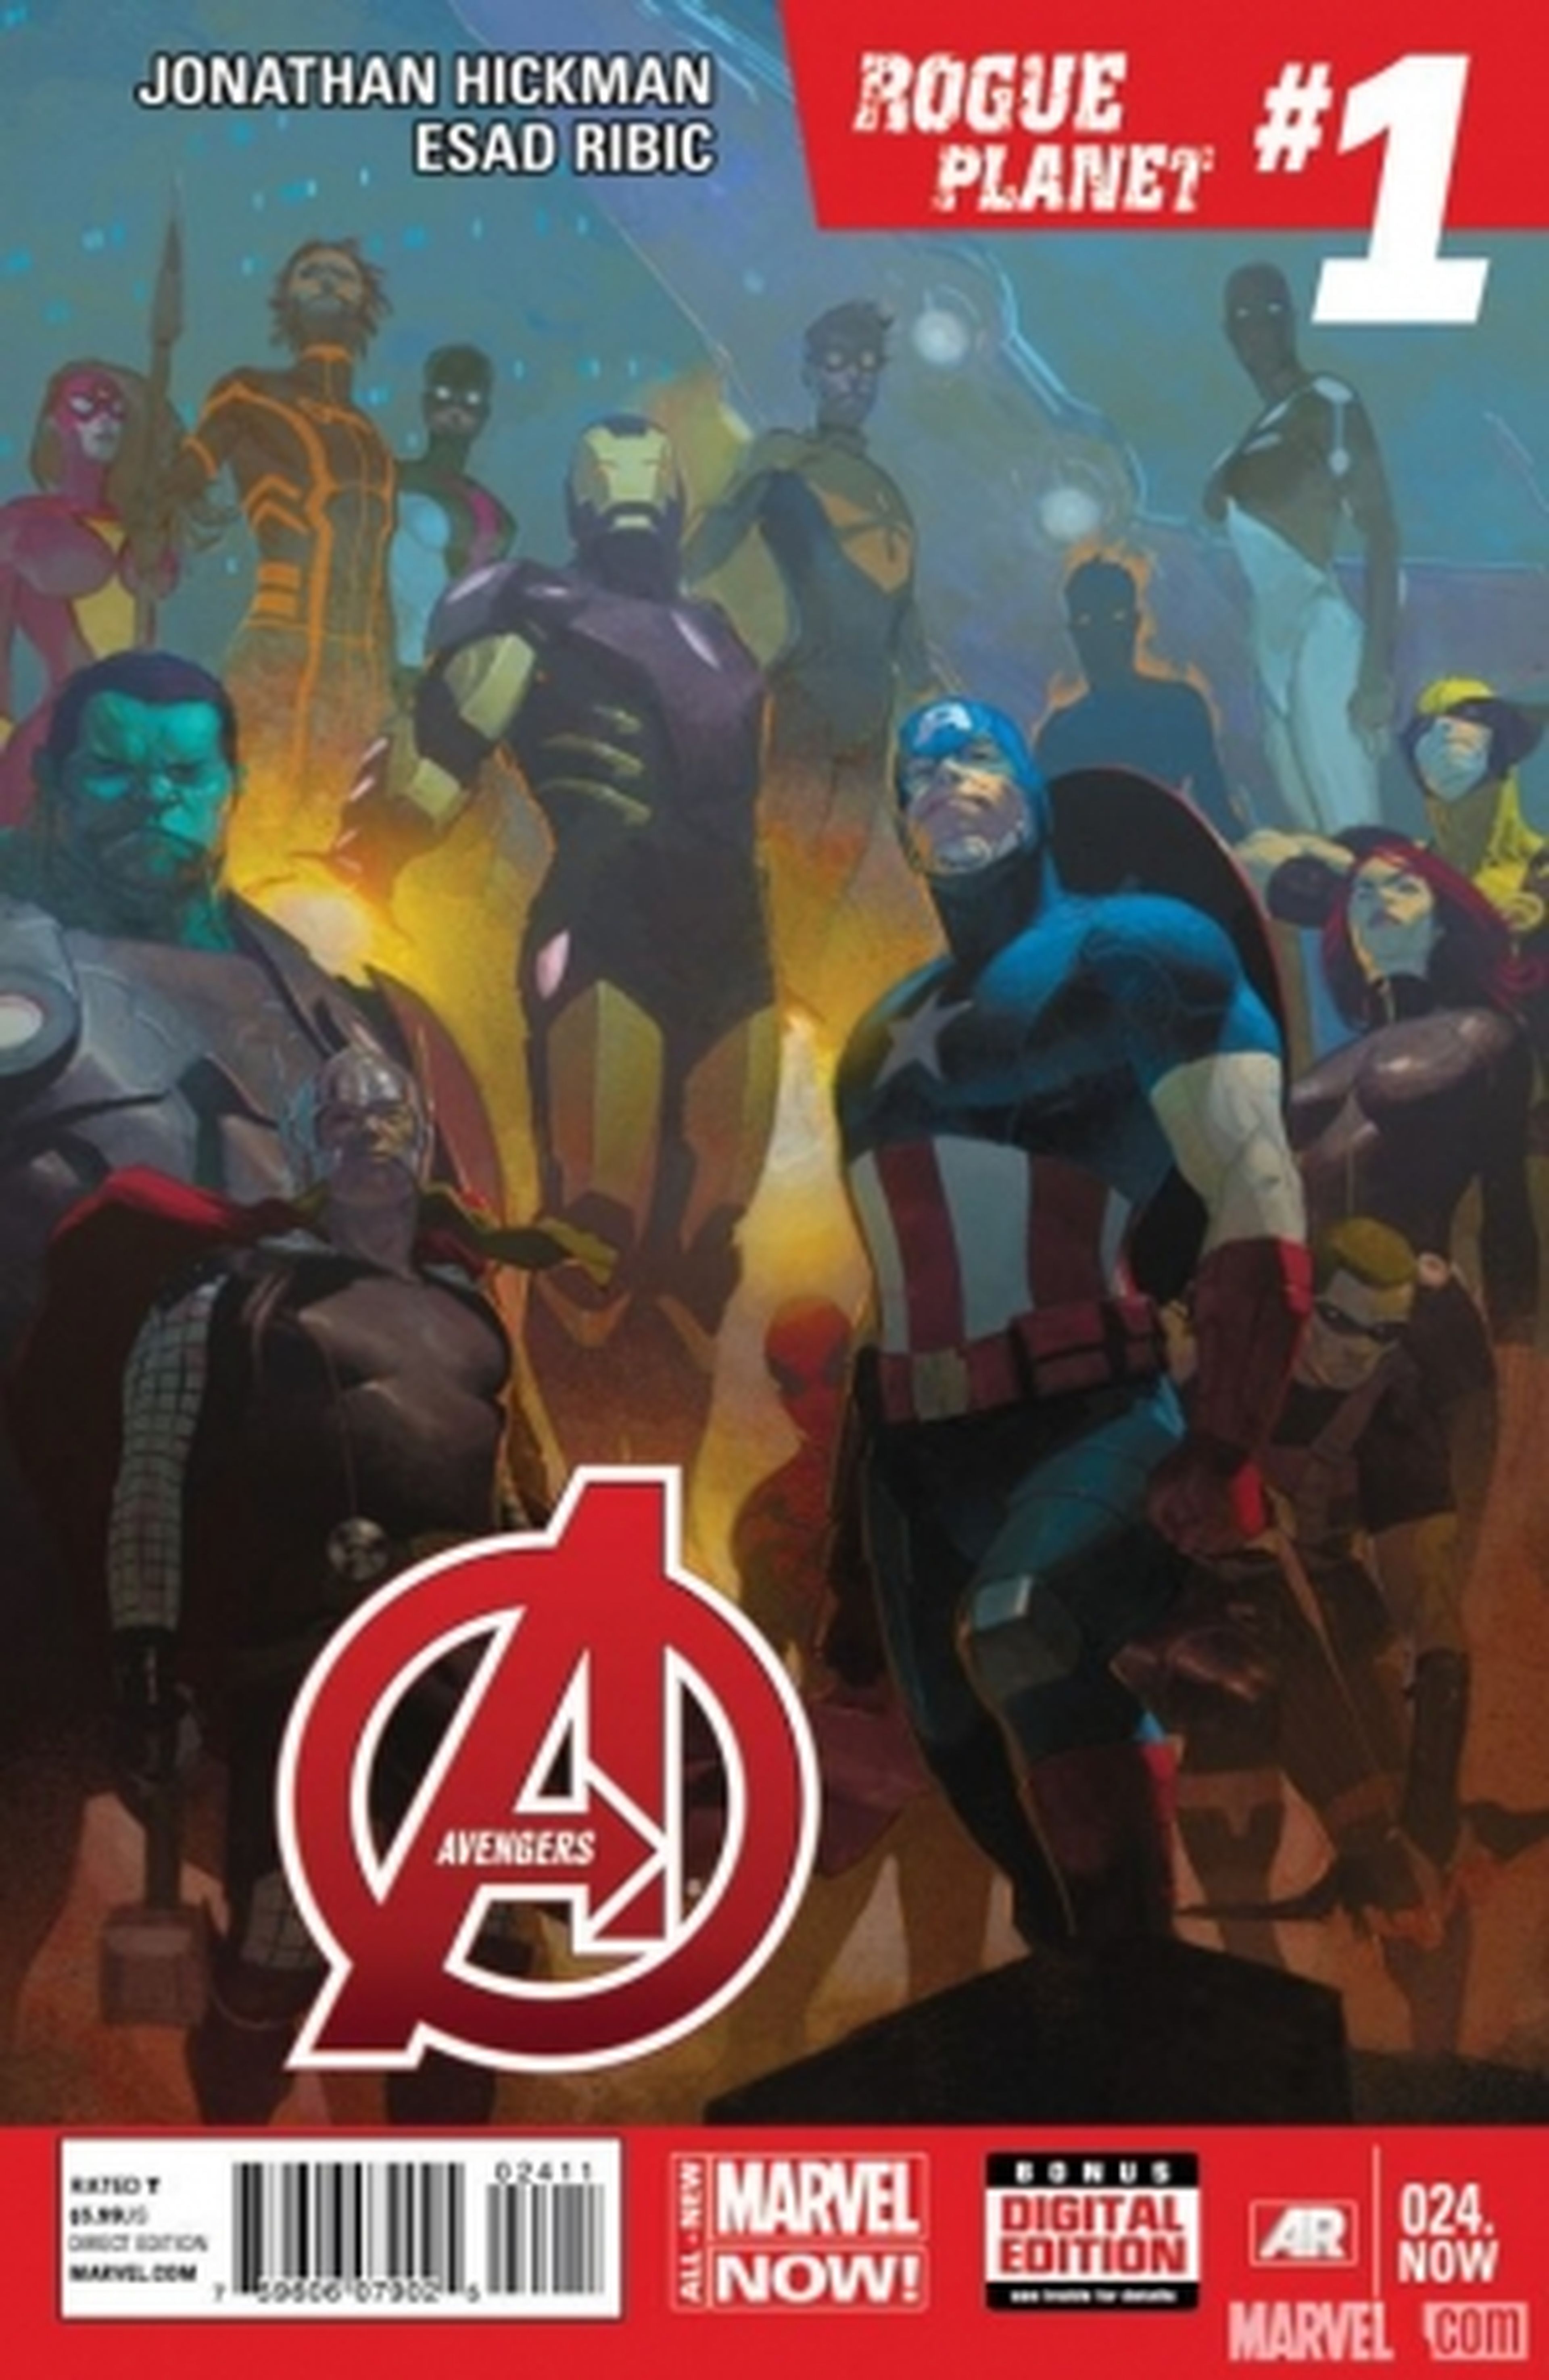 EEUU: Llega la segunda fase de Marvel NOW